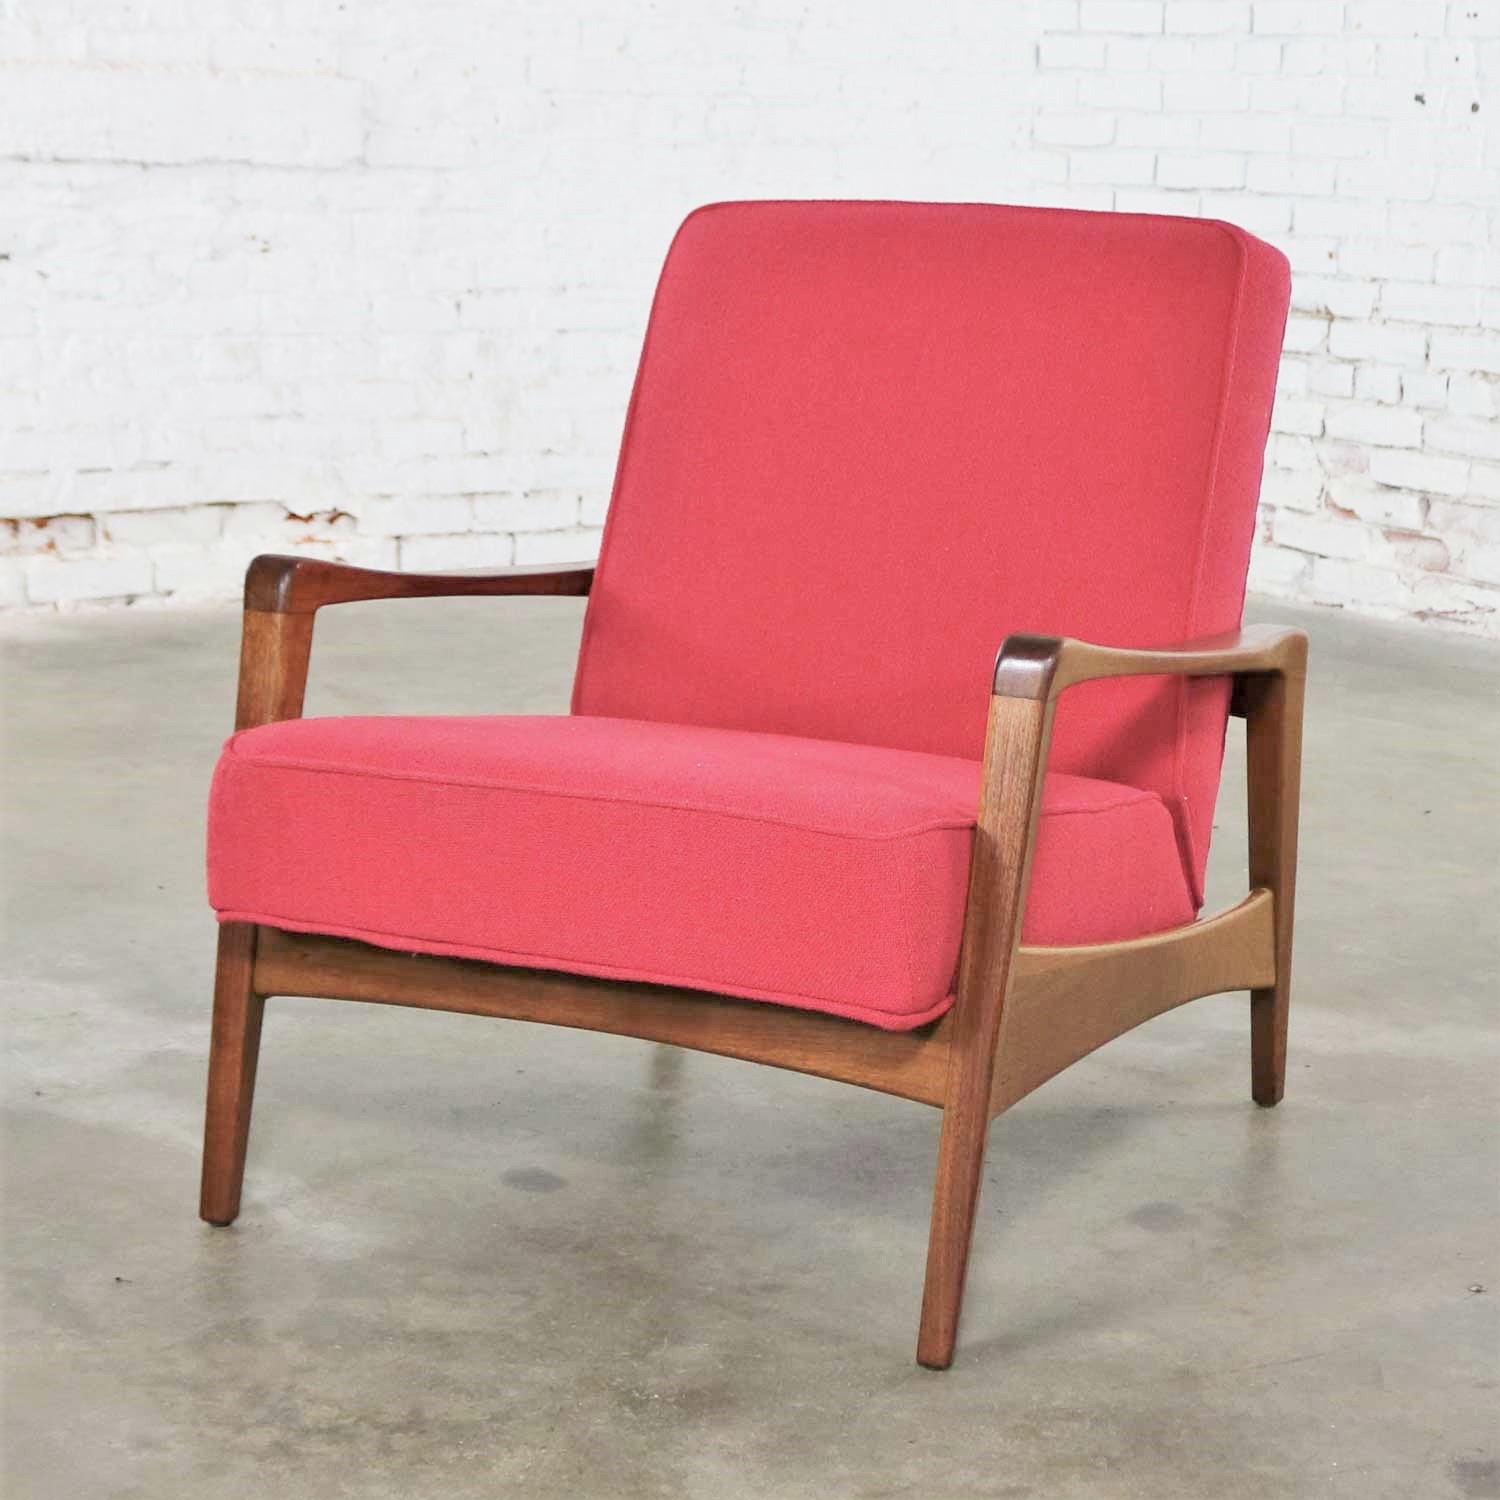 Scandinavian Modern Walnut and Fuchsia Lounge Chair Style Risom or Wanscher